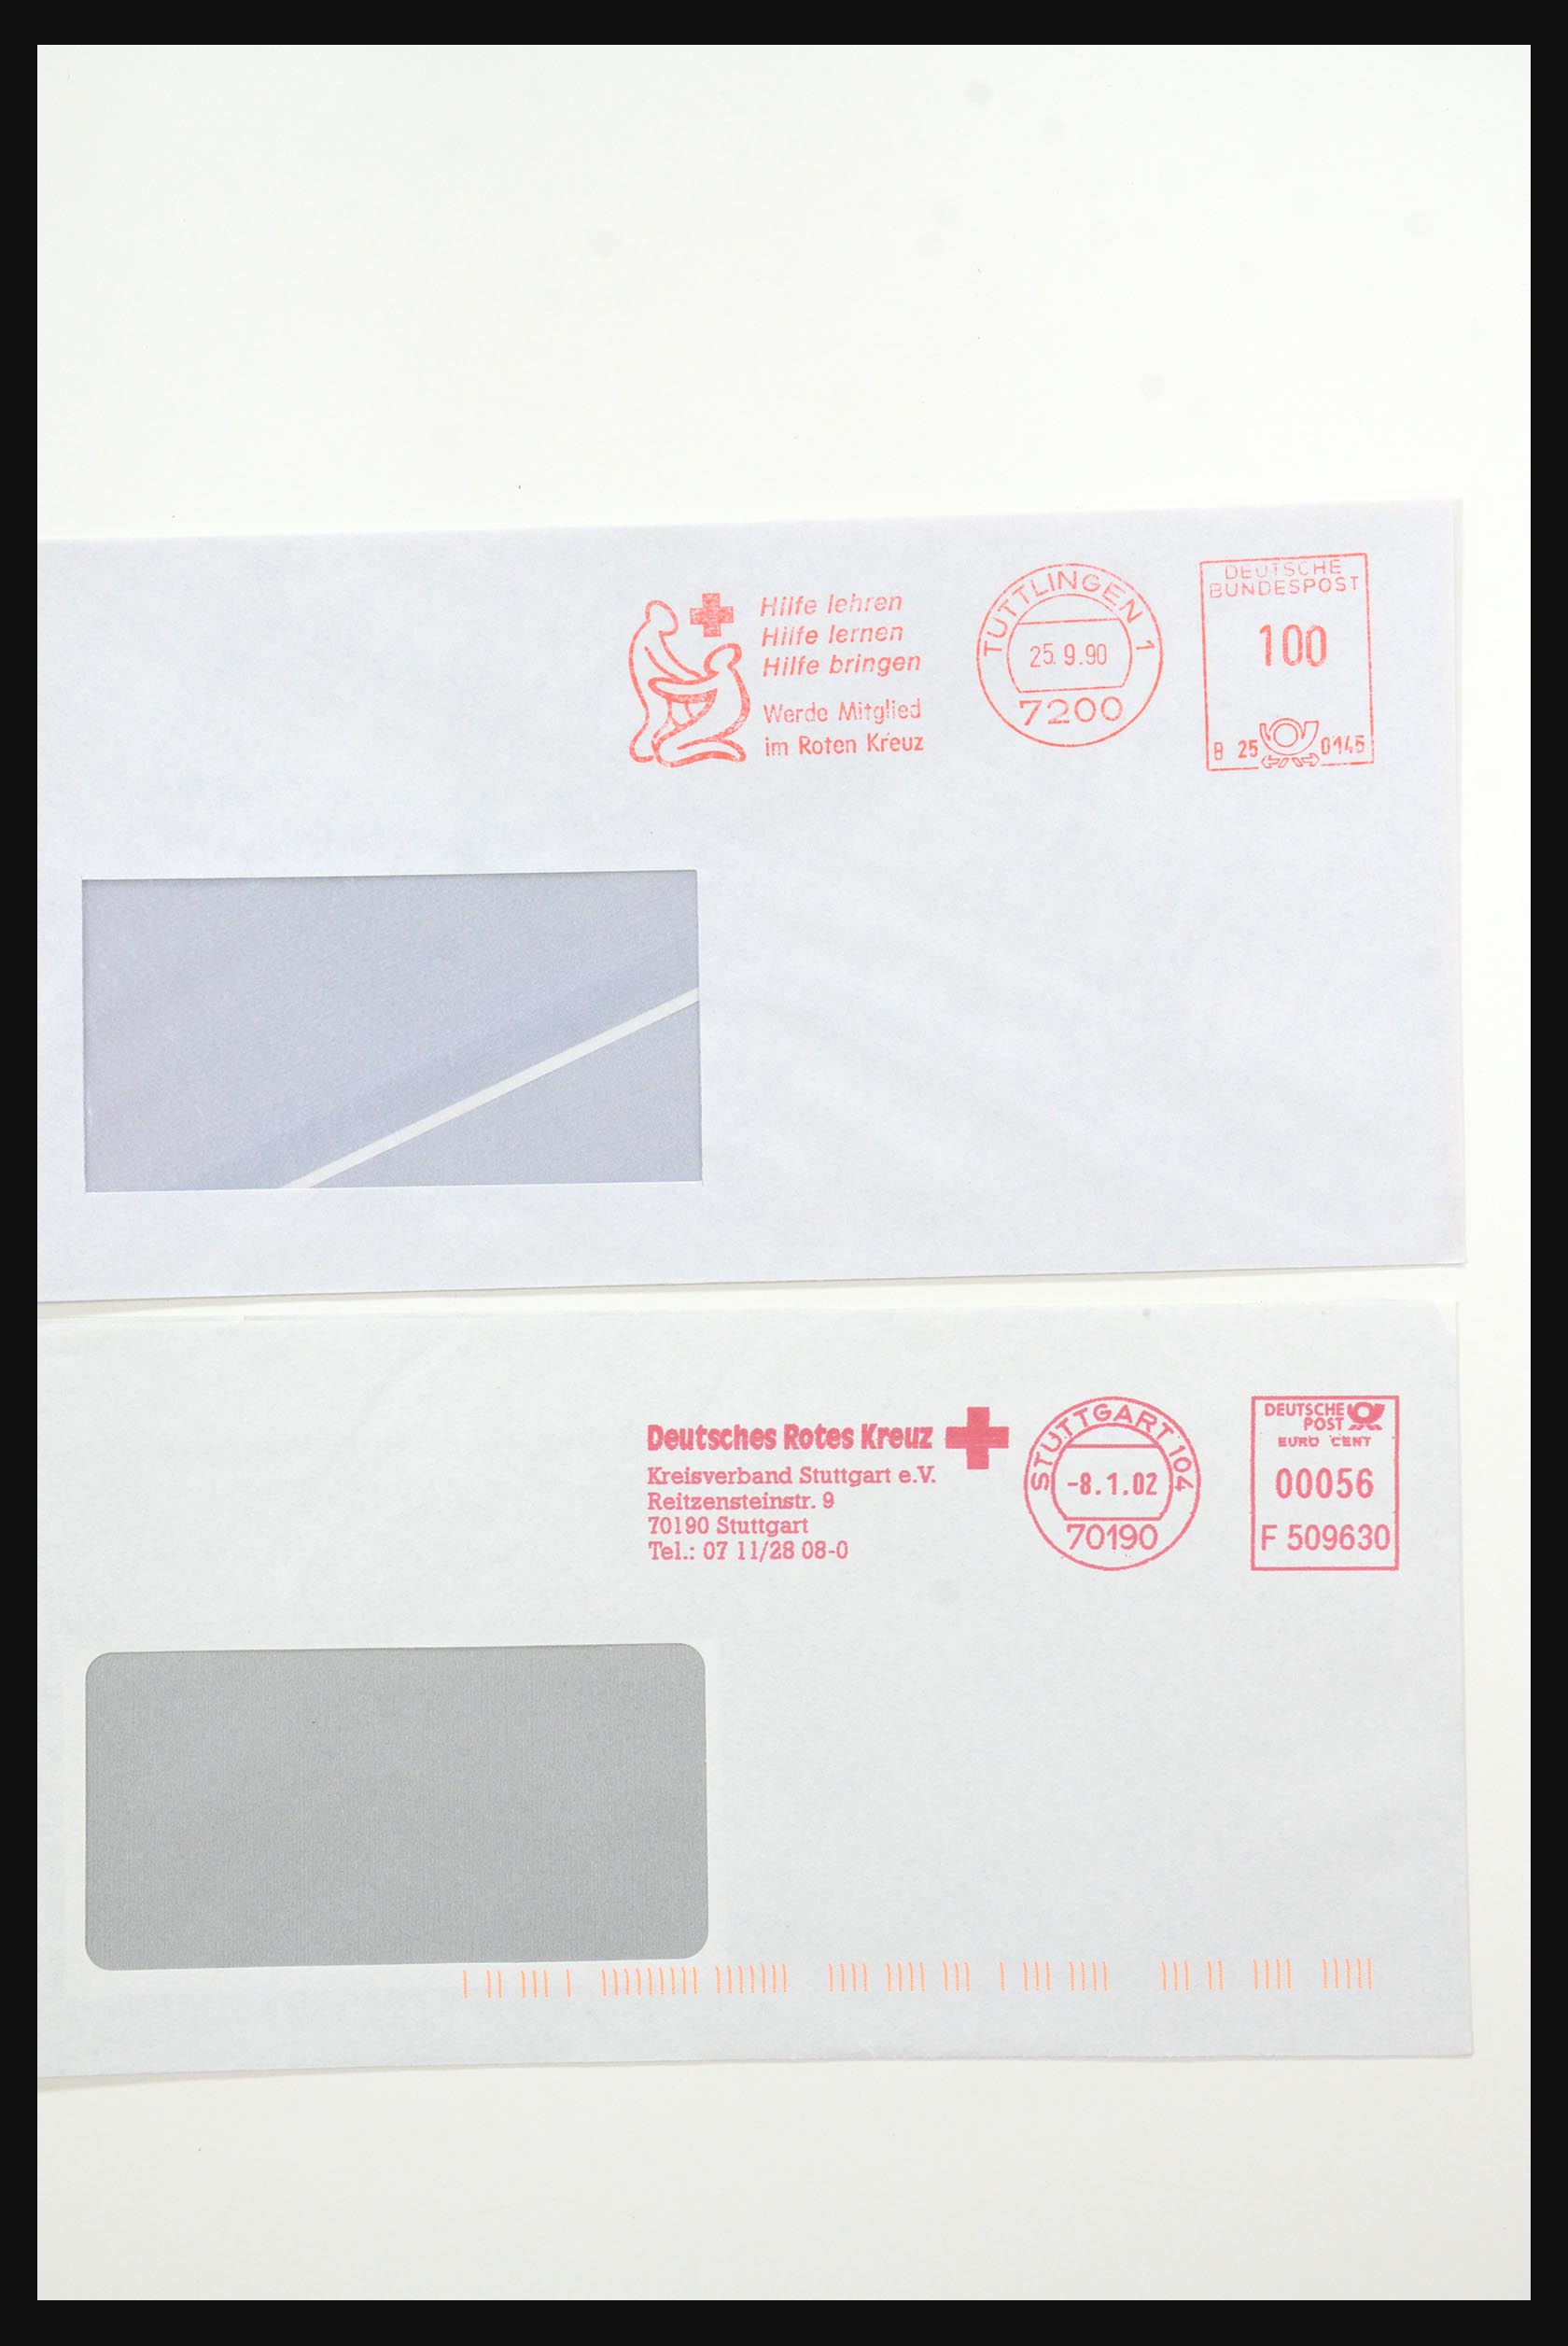 31365 1058 - 31365 Rode kruis brieven 1905-1975.